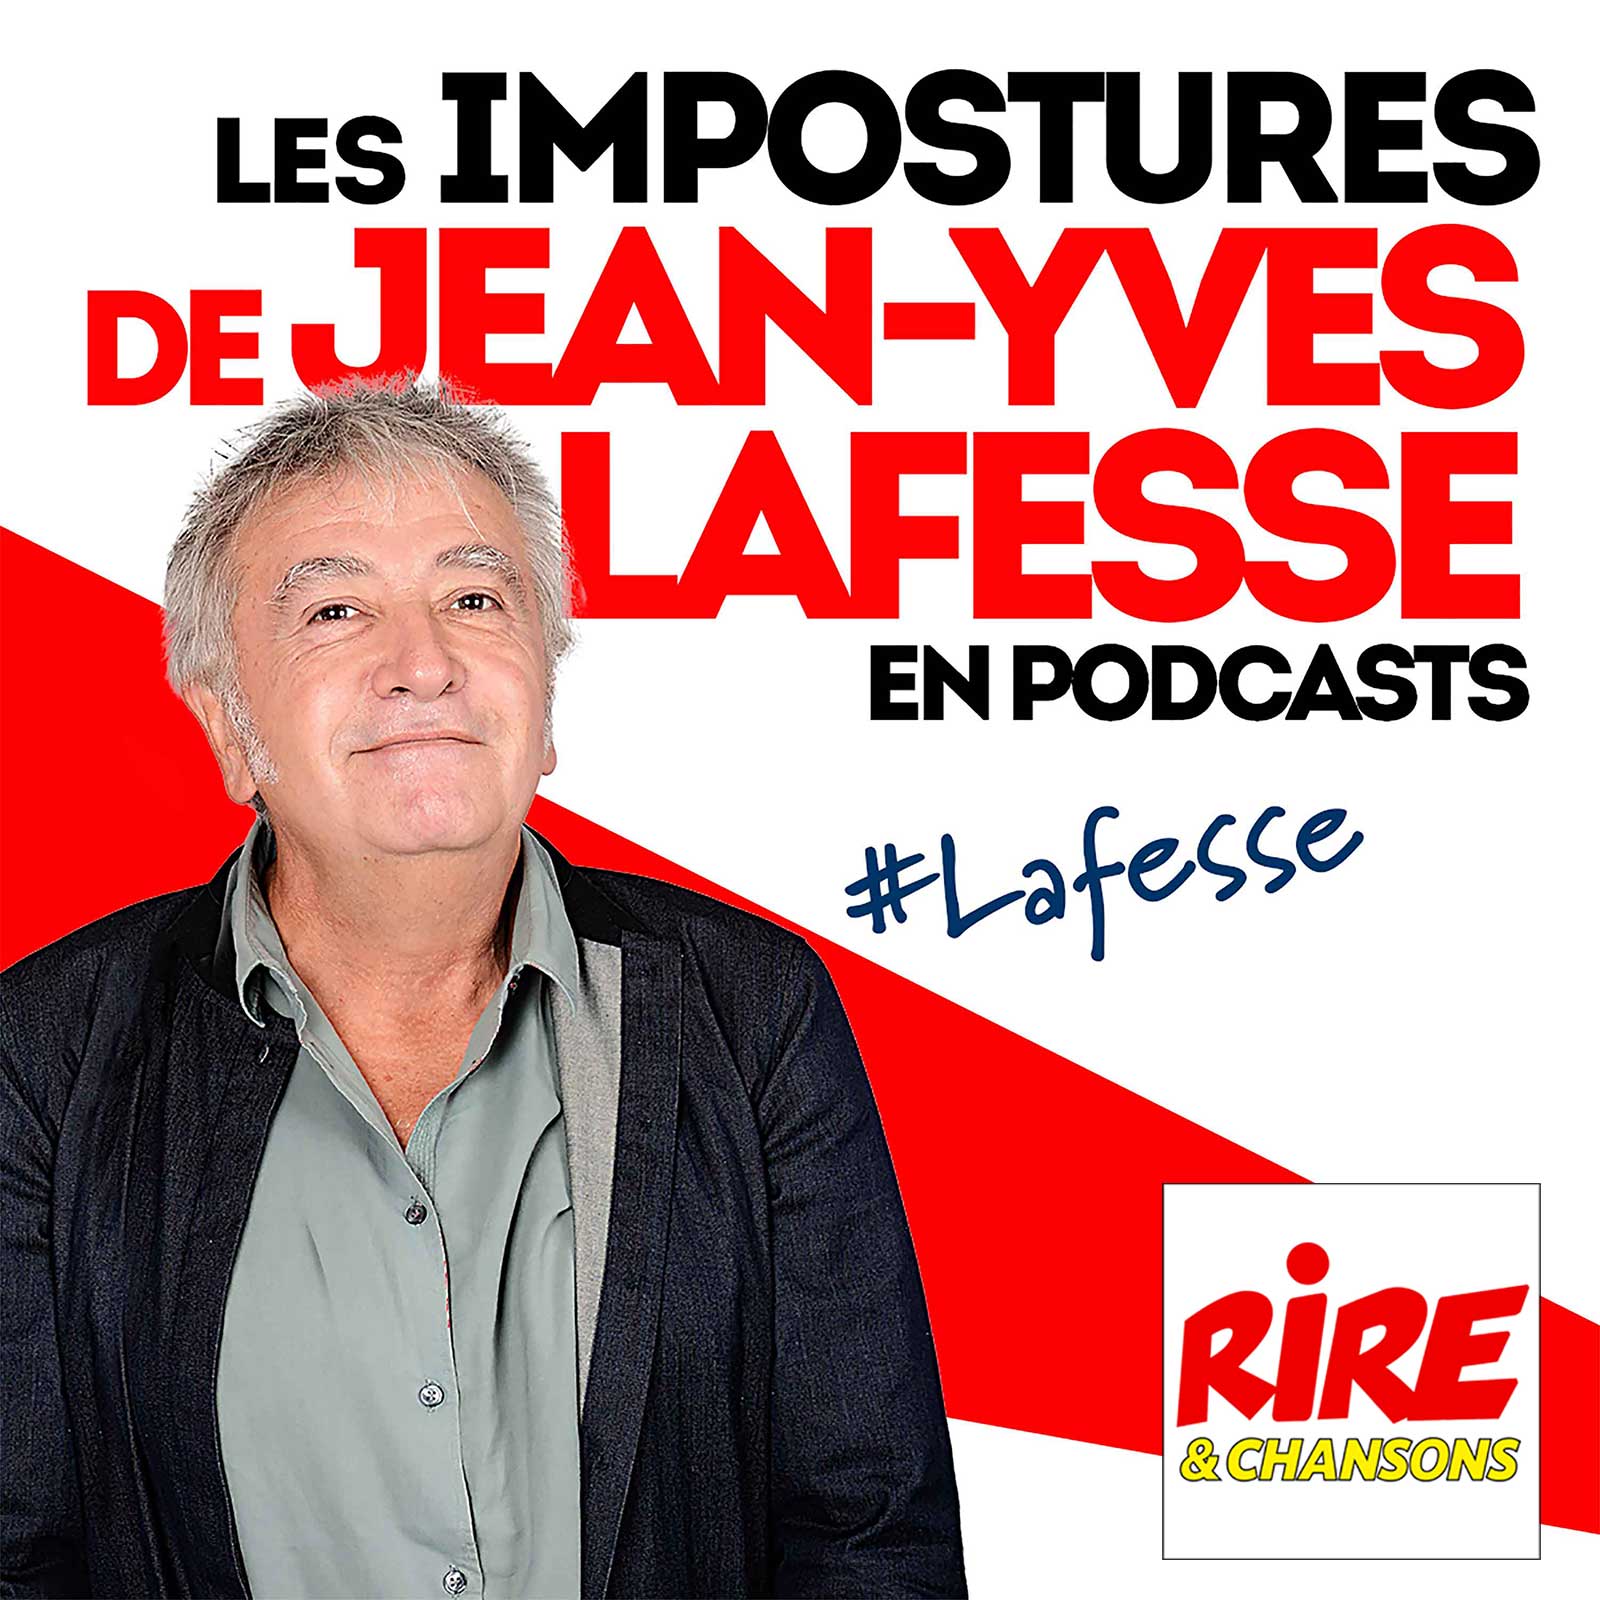 Les professions libérées - Les impostures de Jean-Yves Lafesse